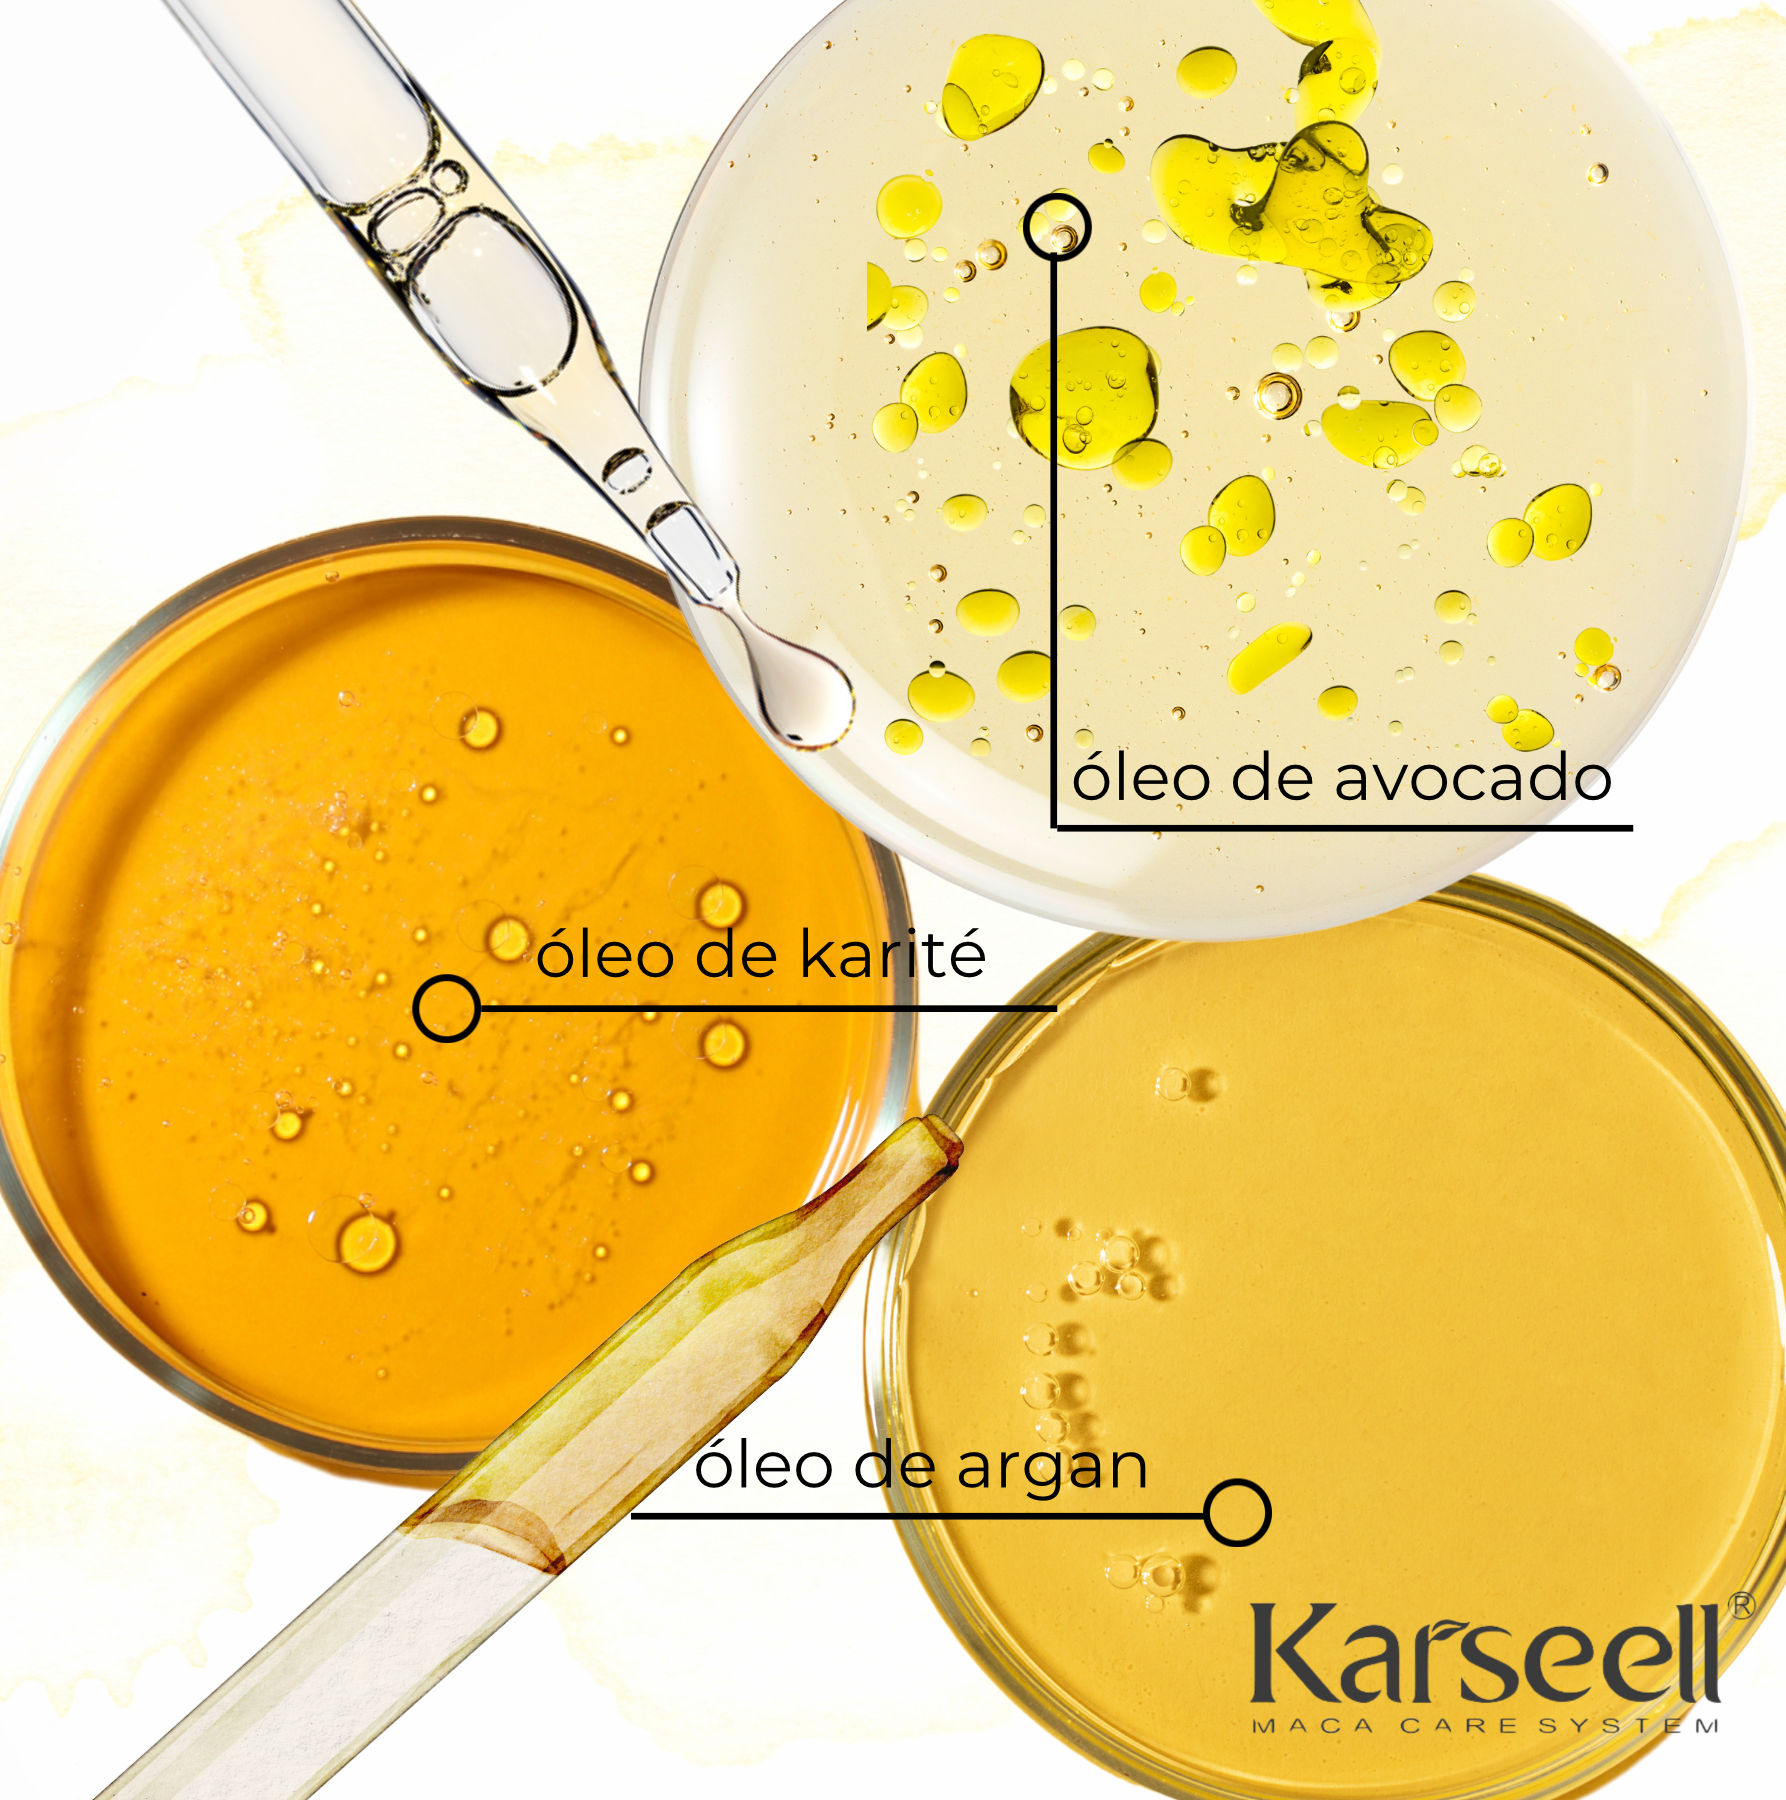 Karseell® Maca Essence Oil Original 50ml